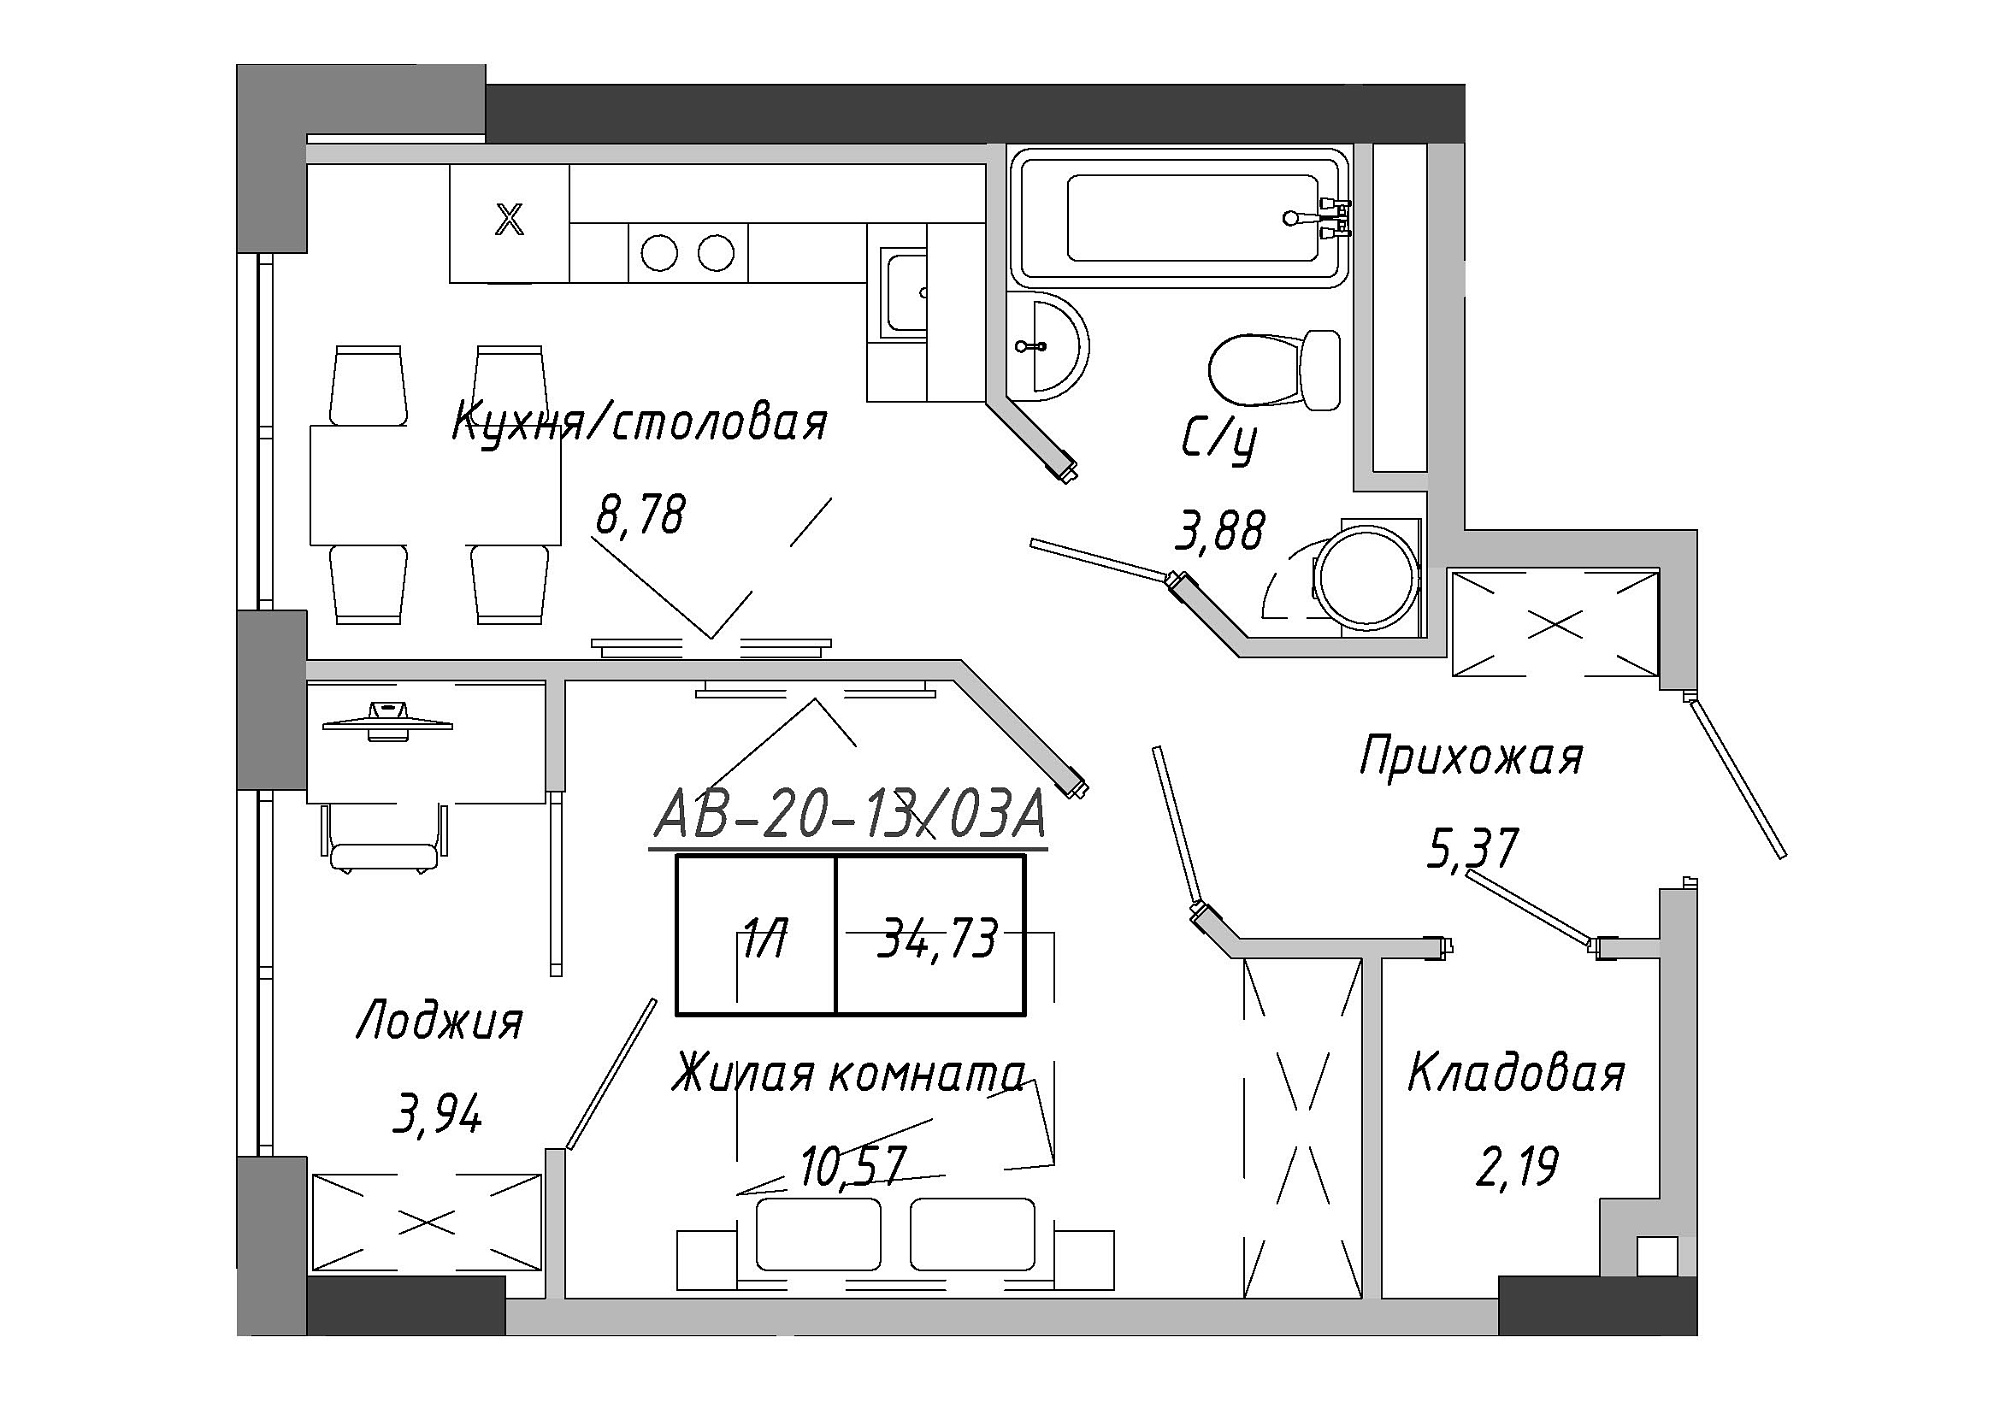 Планировка 1-к квартира площей 34.73м2, AB-20-13/0103a.